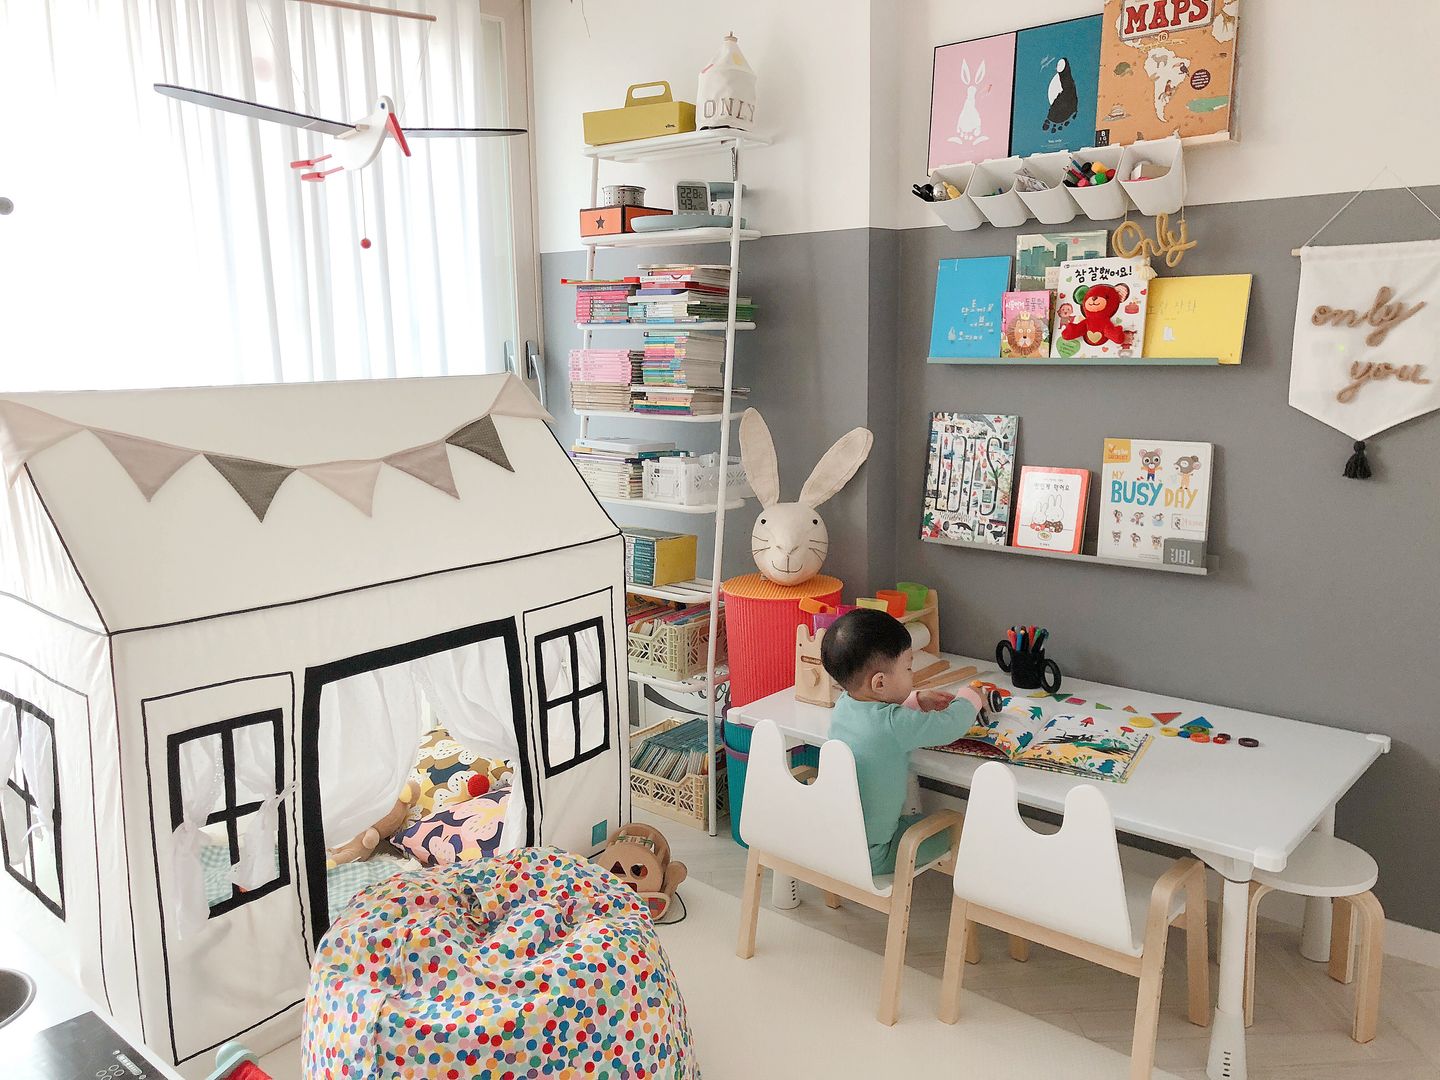 스노우 책상 상세 설명 및 활용 예시, 토끼네집 토끼네집 Modern nursery/kids room Desks & chairs